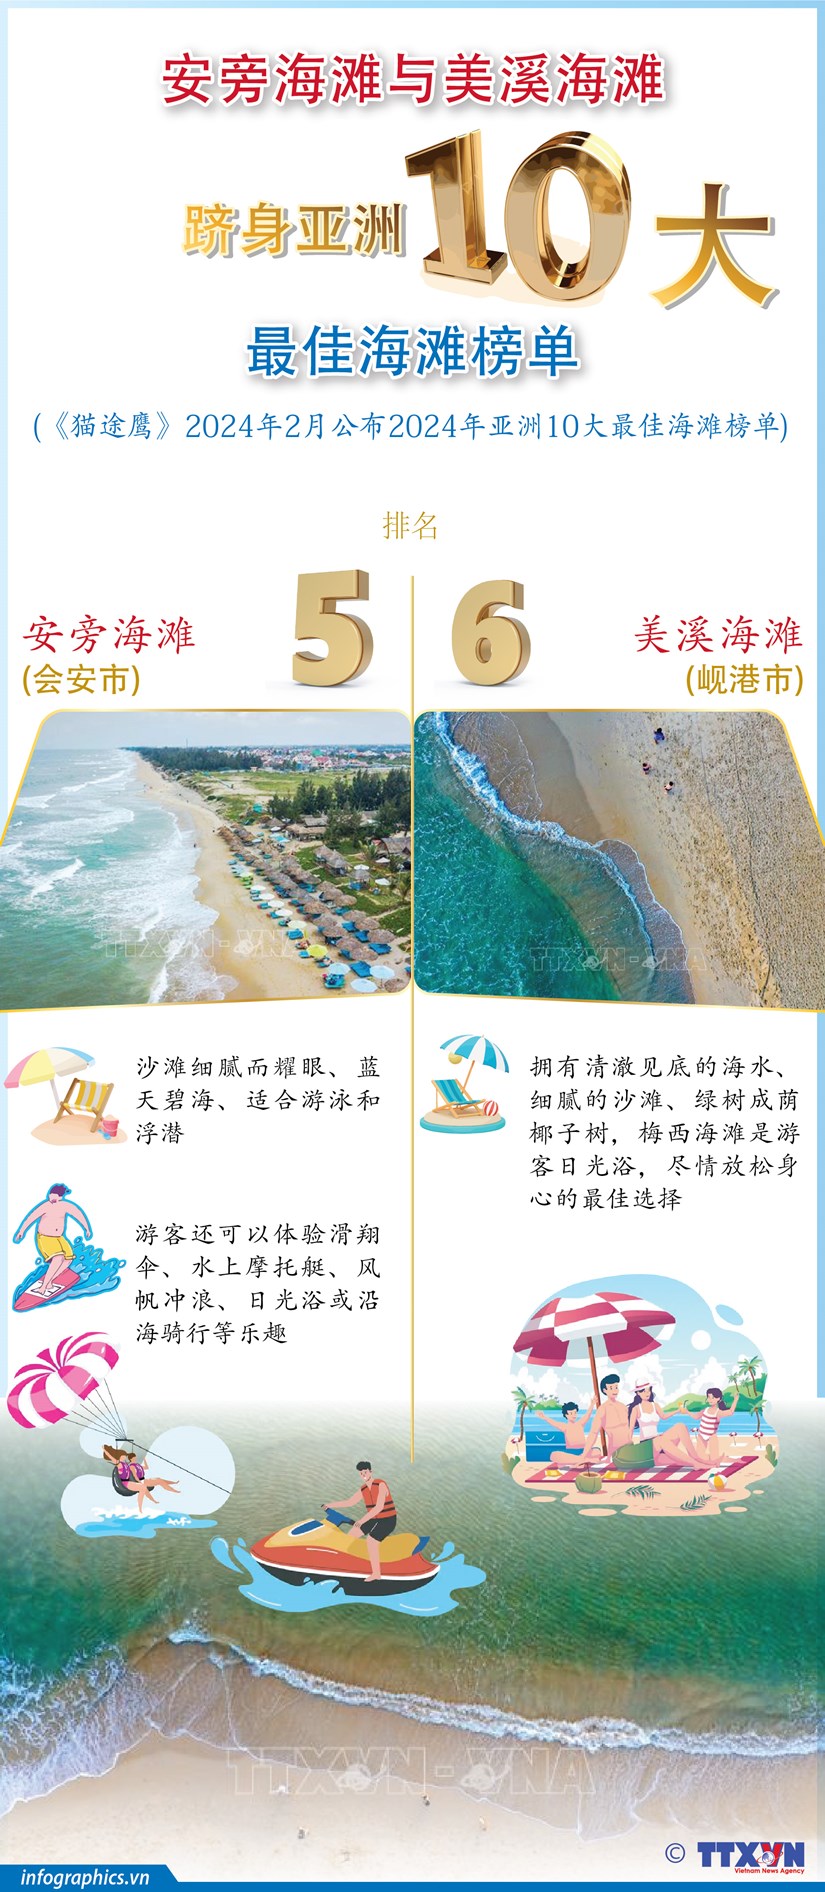 图表新闻：安旁海滩与美溪海滩跻身亚洲10大最佳海滩榜单 hinh anh 1